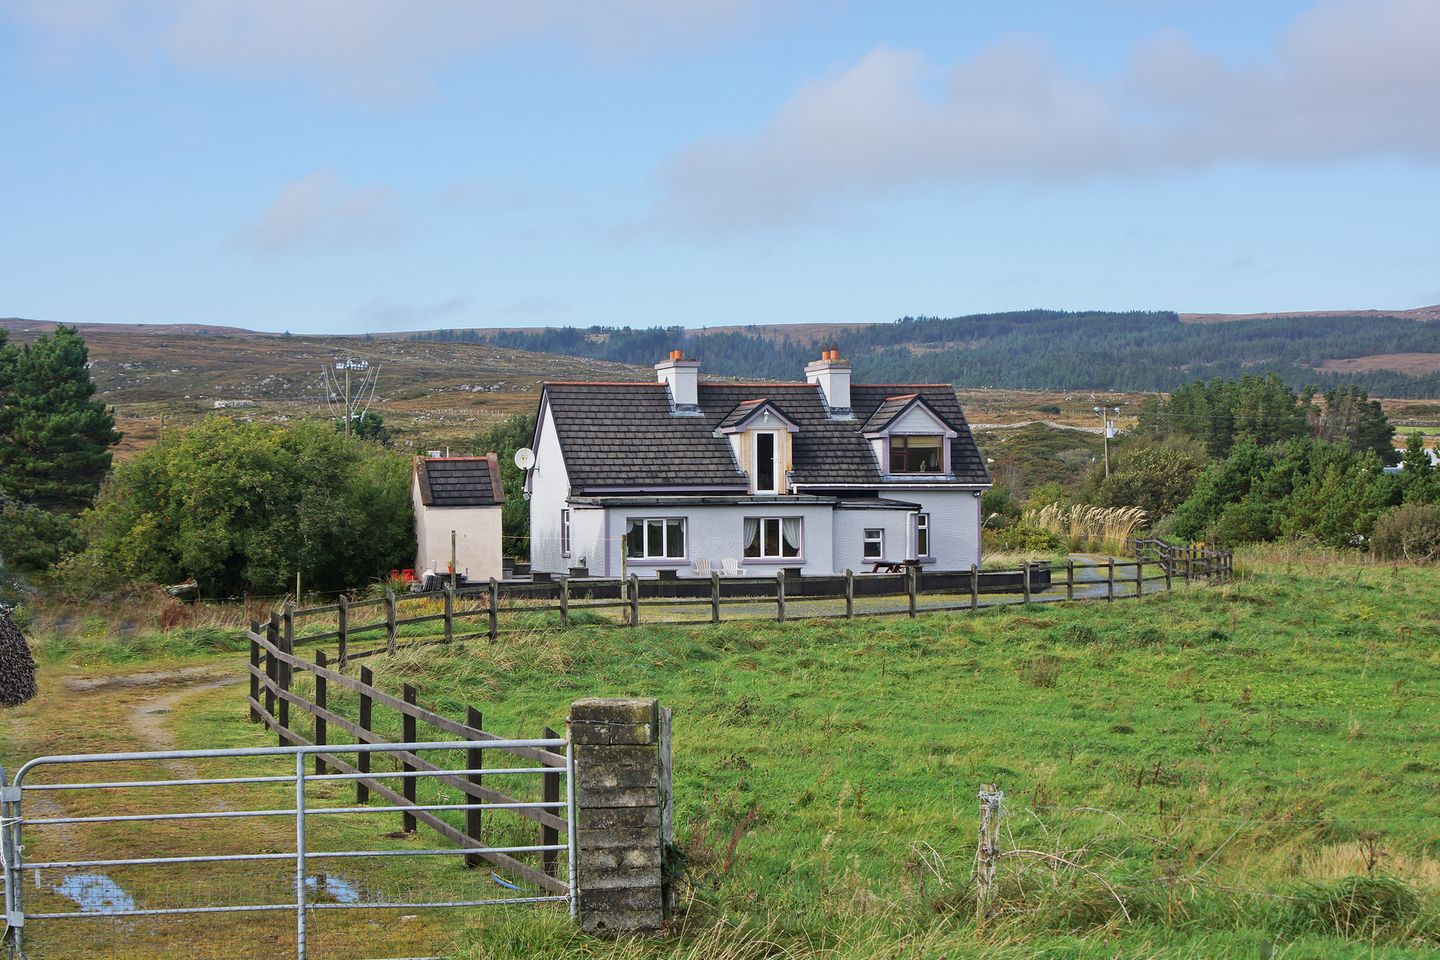 Connemara (I213), Kilkieran, Co. Galway